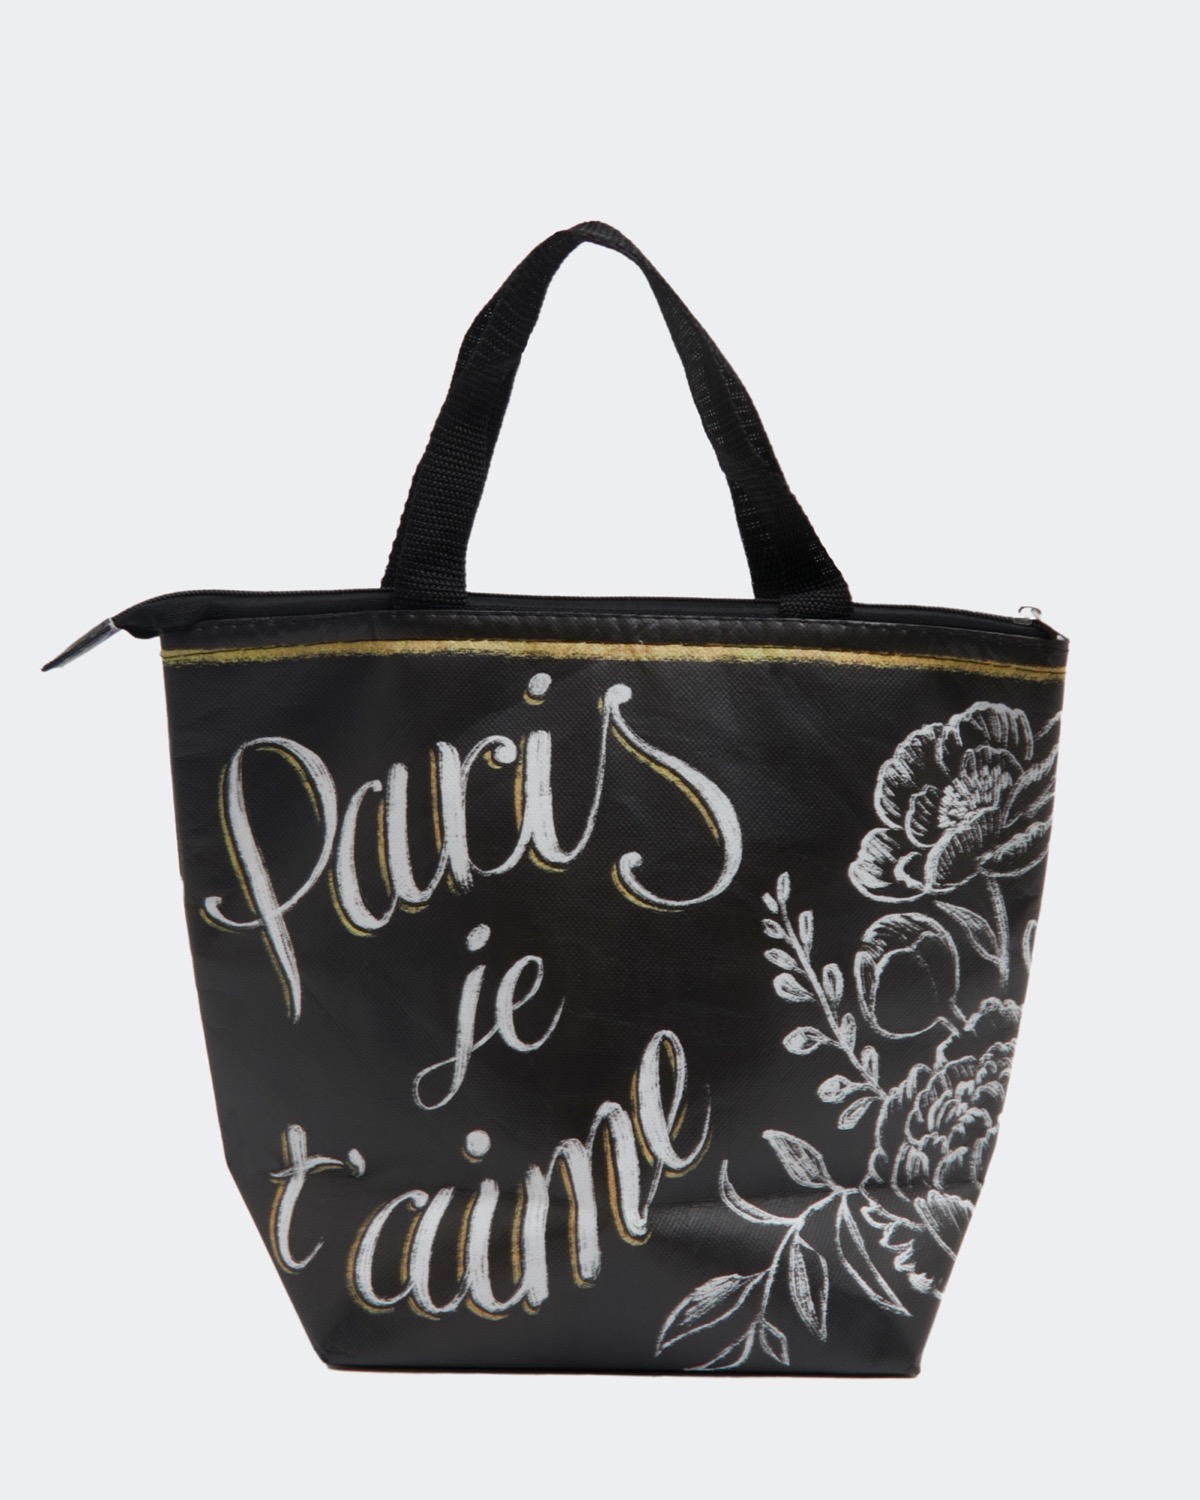 Ames City Canvas Tote Bag (Black bag + Color font options)